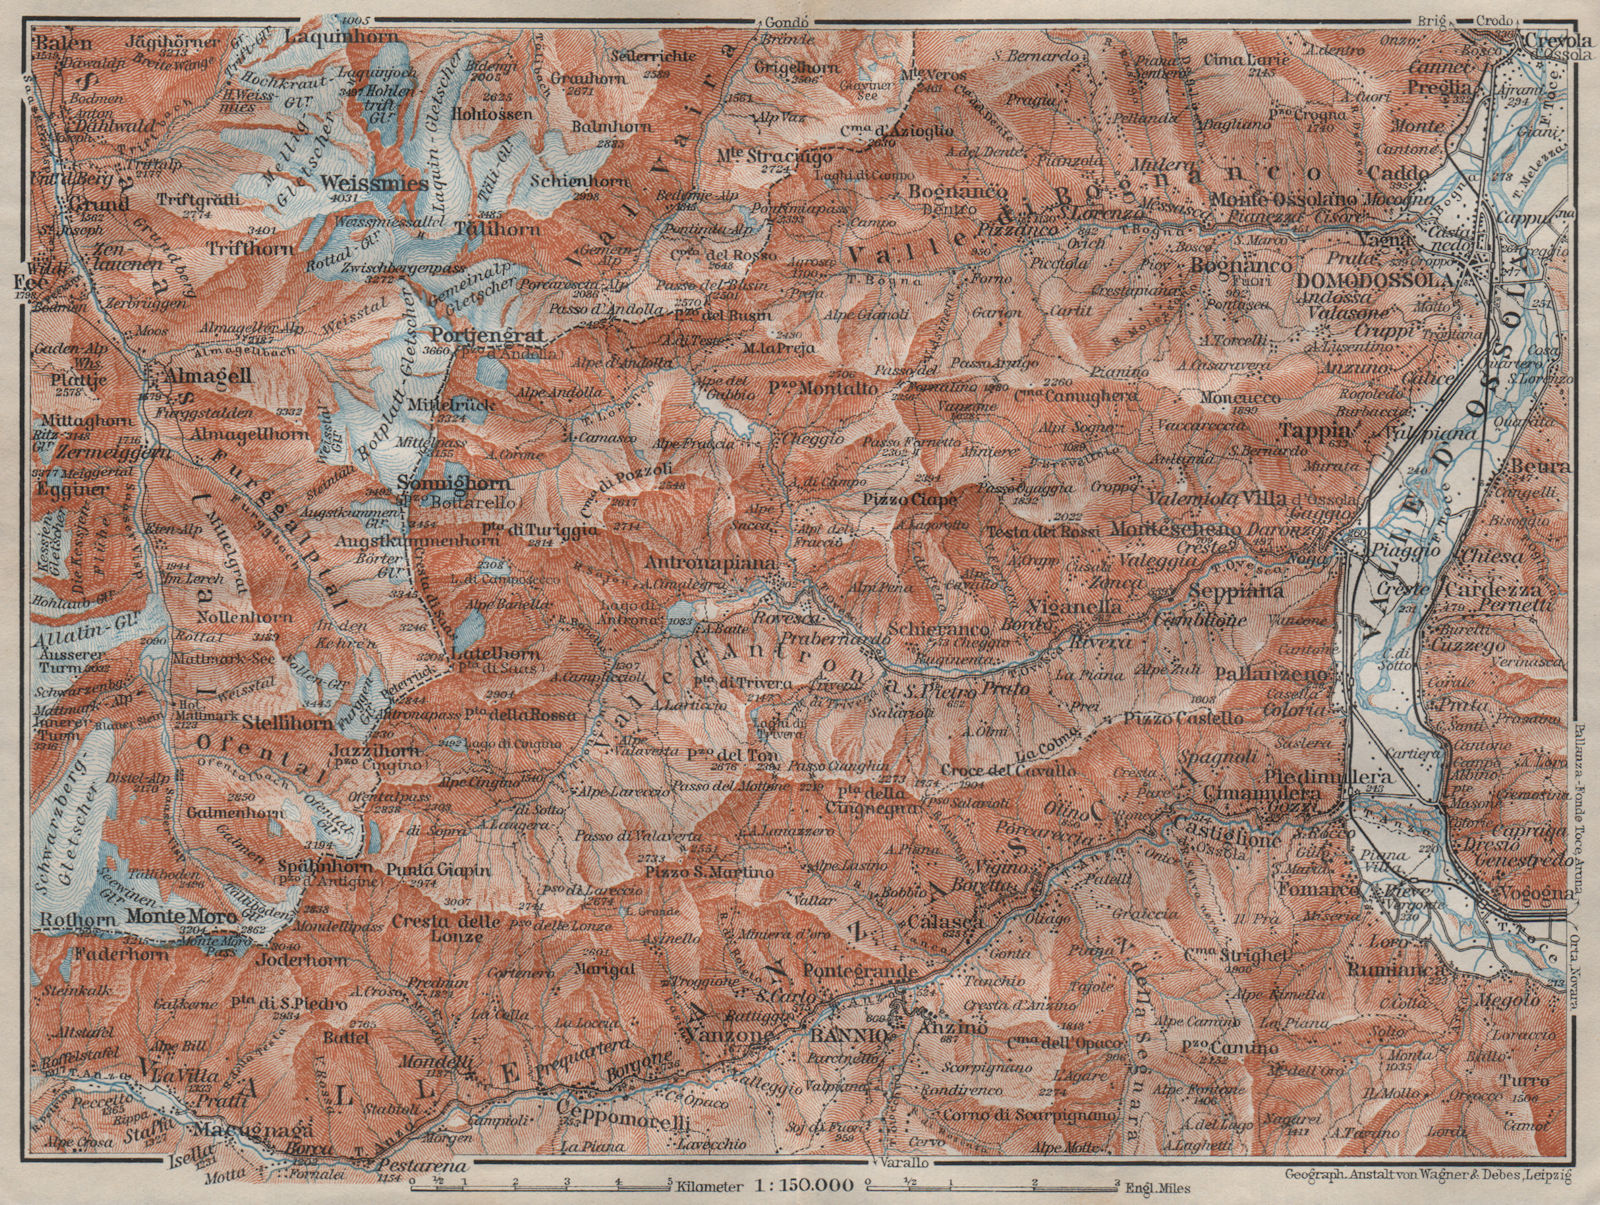 VALLE ANTRONA. Saas-Fee/Grund/Almagell Bannio Weissmies Domodossola 1911 map